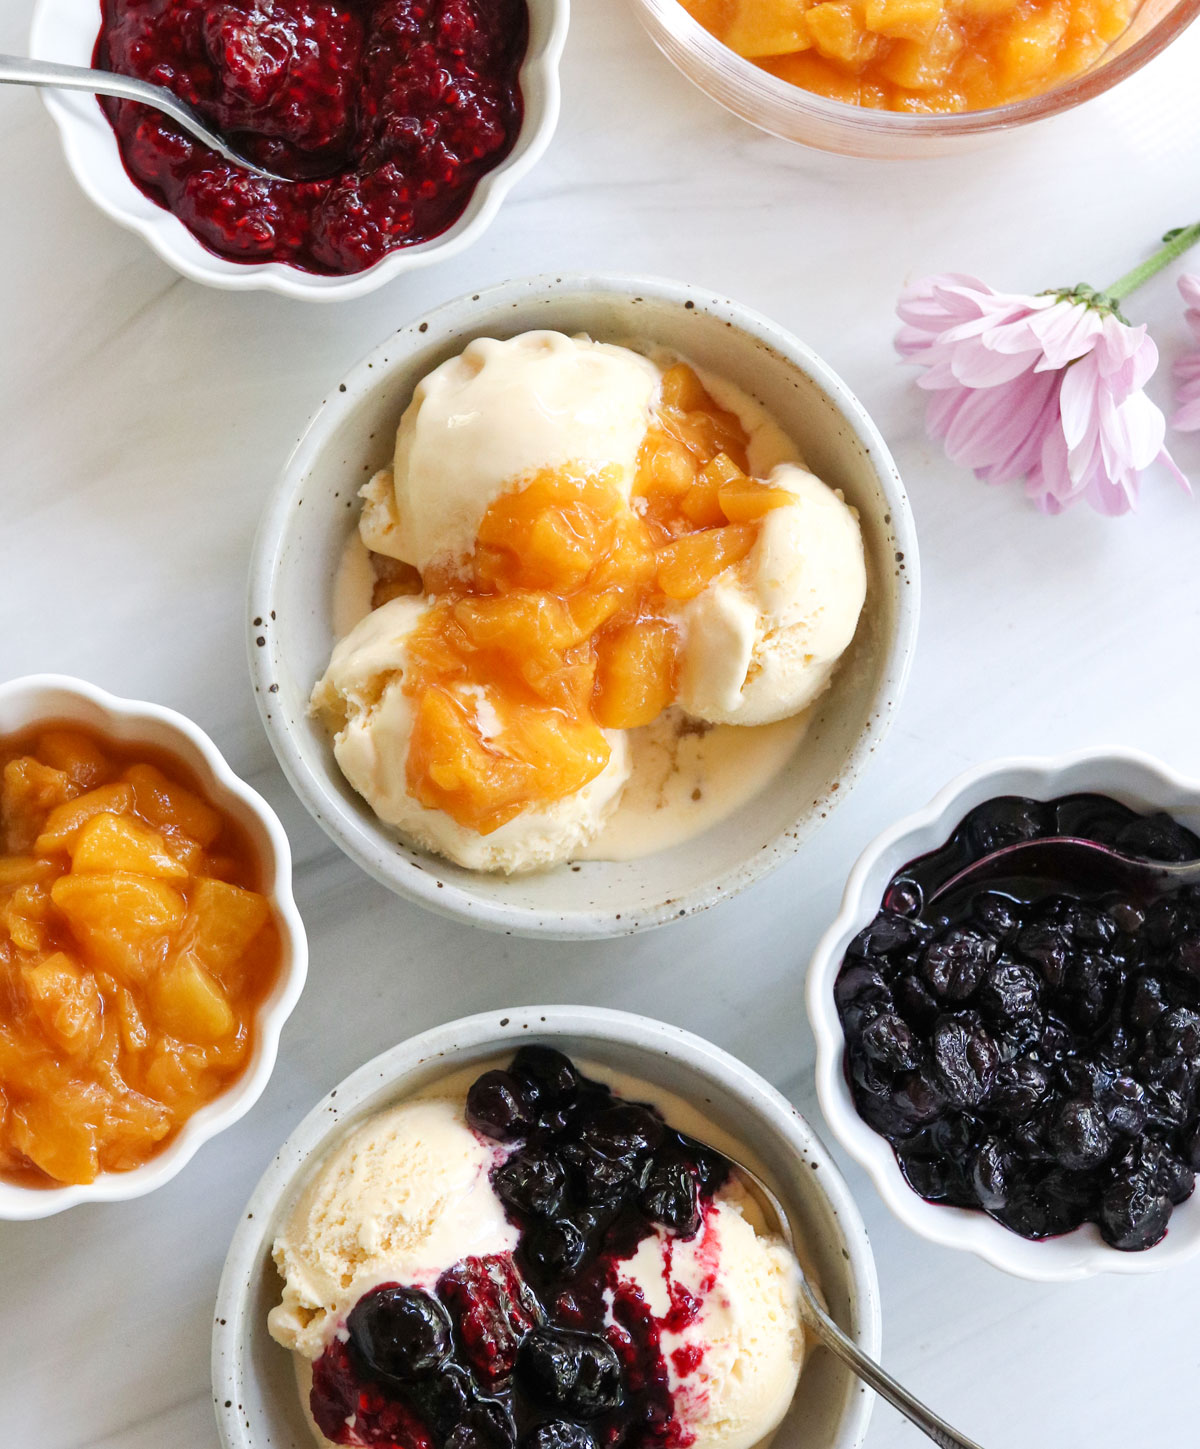 composta di frutta servita su gelato alla vaniglia.